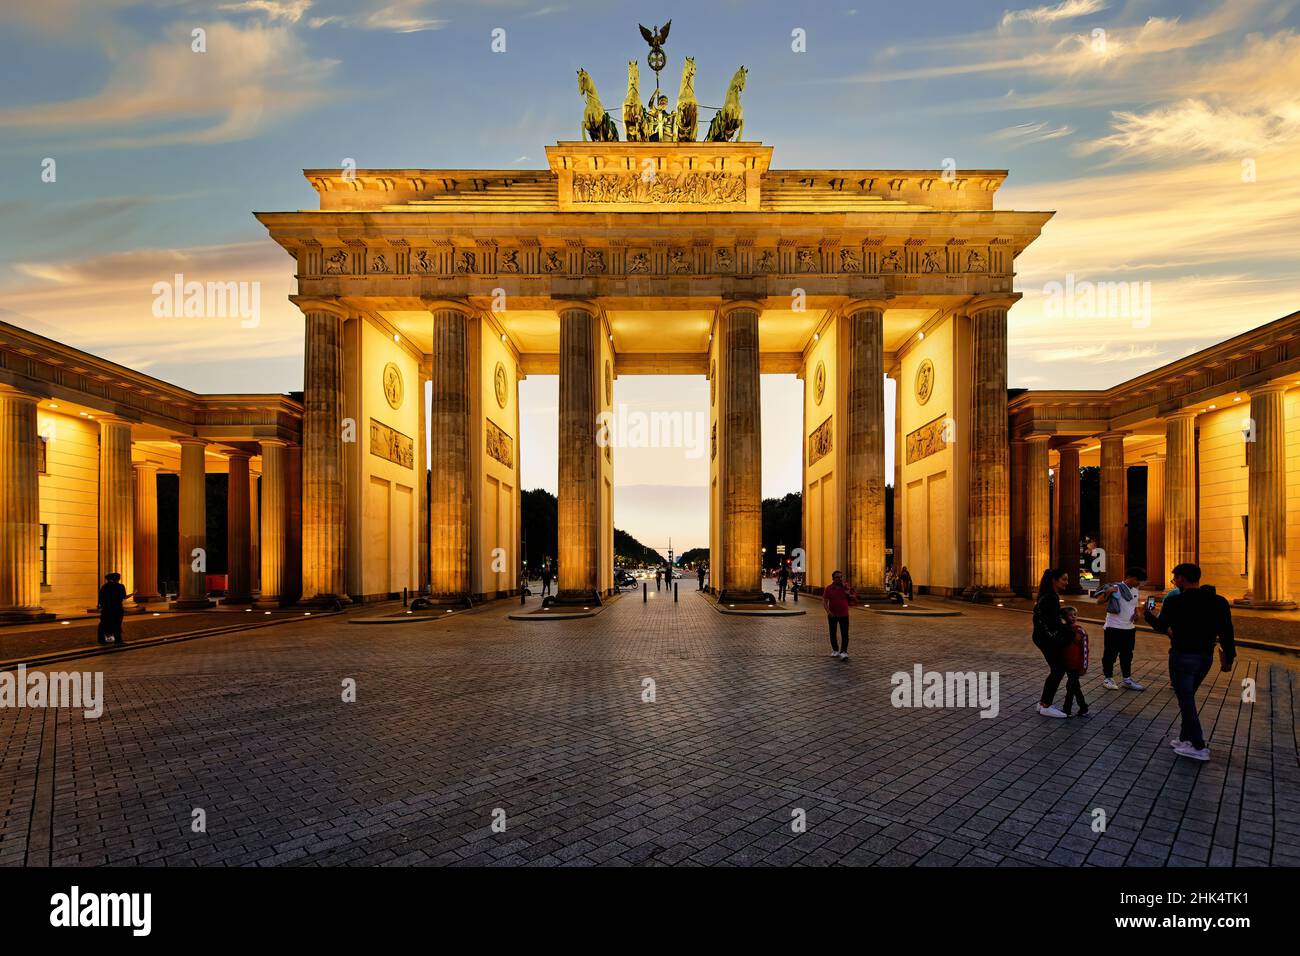 Porta di Brandeburgo al tramonto, Piazza Pariser, Unter den Linden, Berlino, Germania, Europa Foto Stock